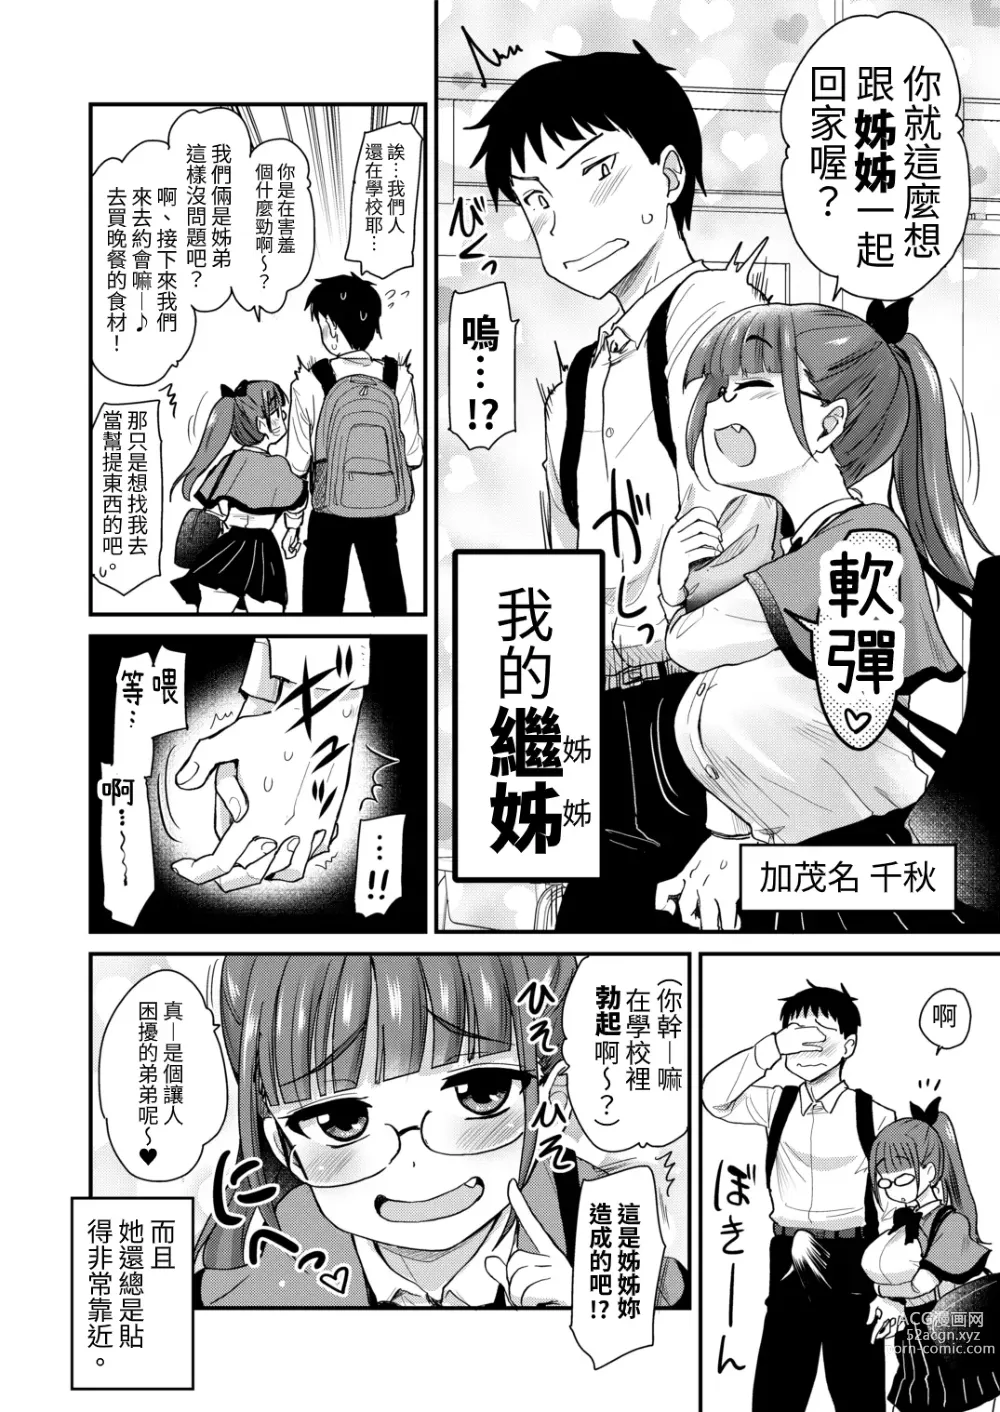 Page 4 of doujinshi 沒有血緣的姊姊認為弟弟的性慾處理是姊姊的責任。